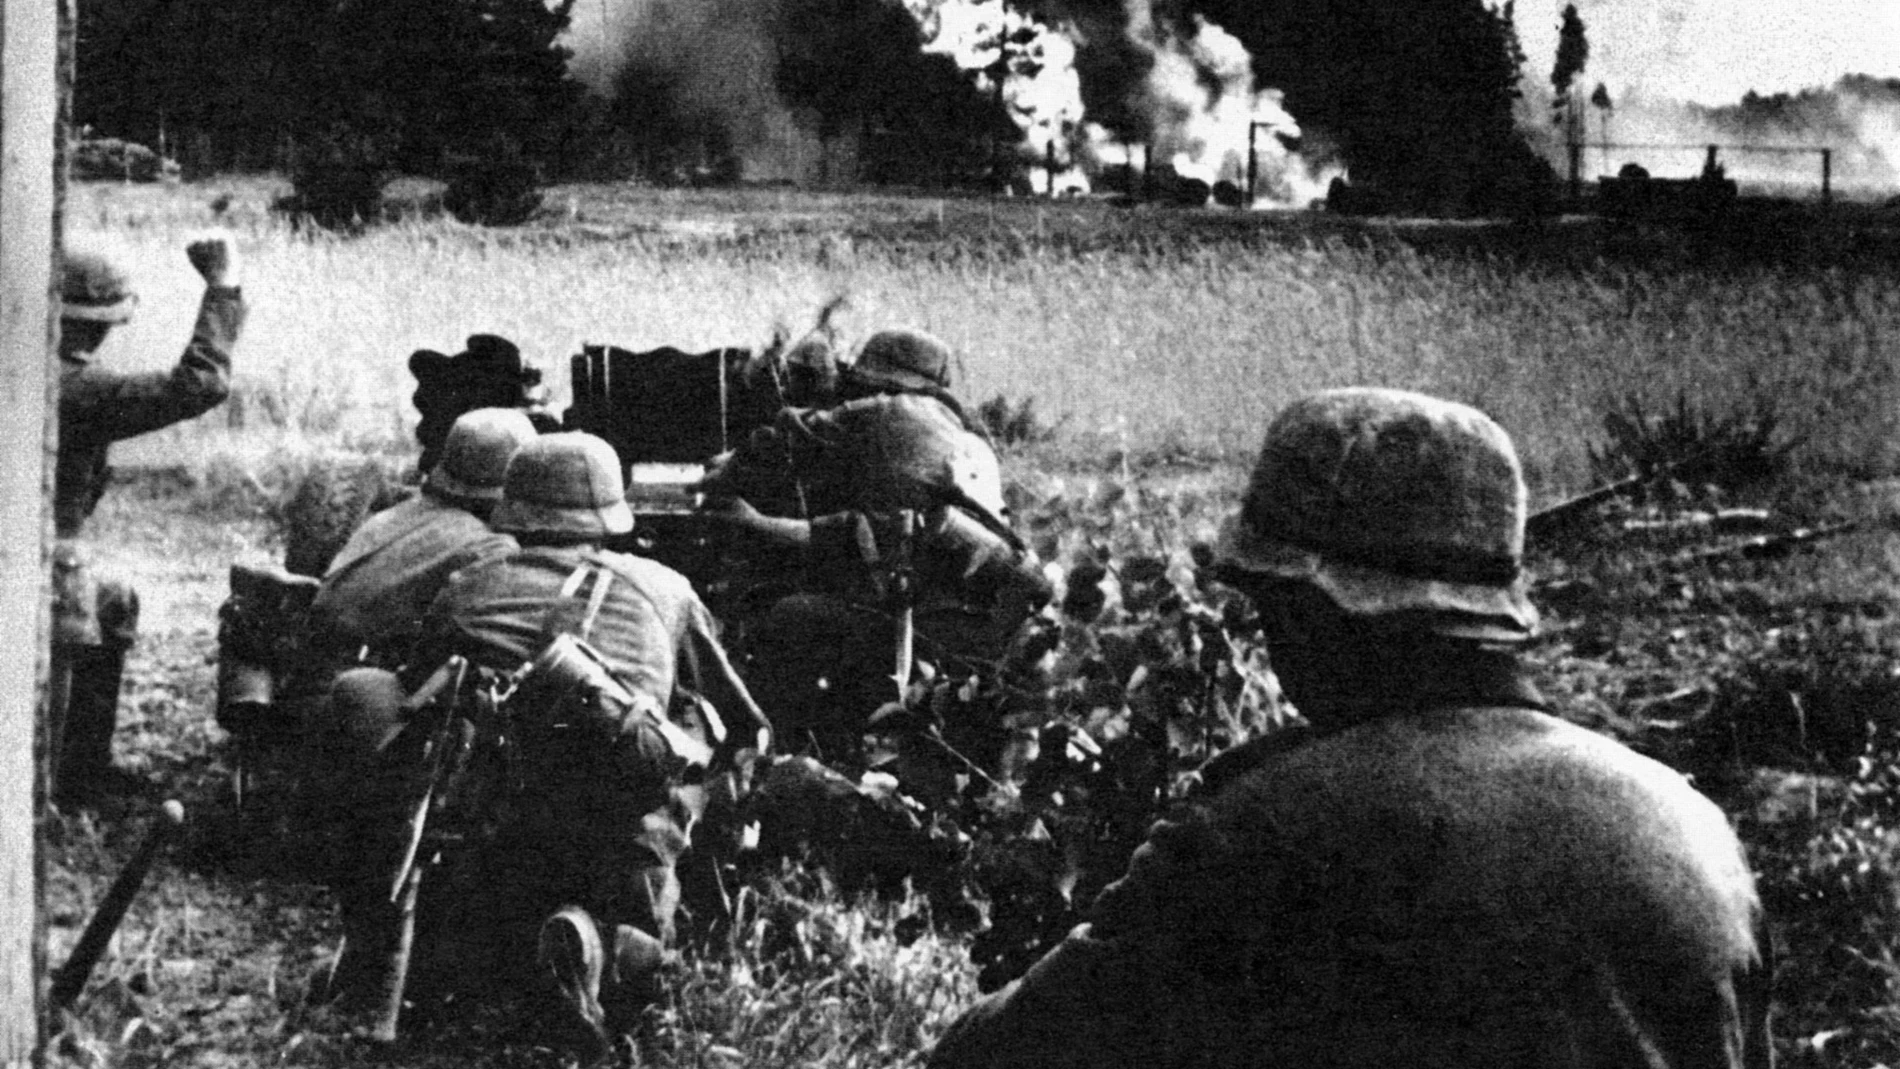 Una pieza contracarro alemana dispara contra una columna soviética, al fondo se puede adivinar la silueta de un vehículo en llamas